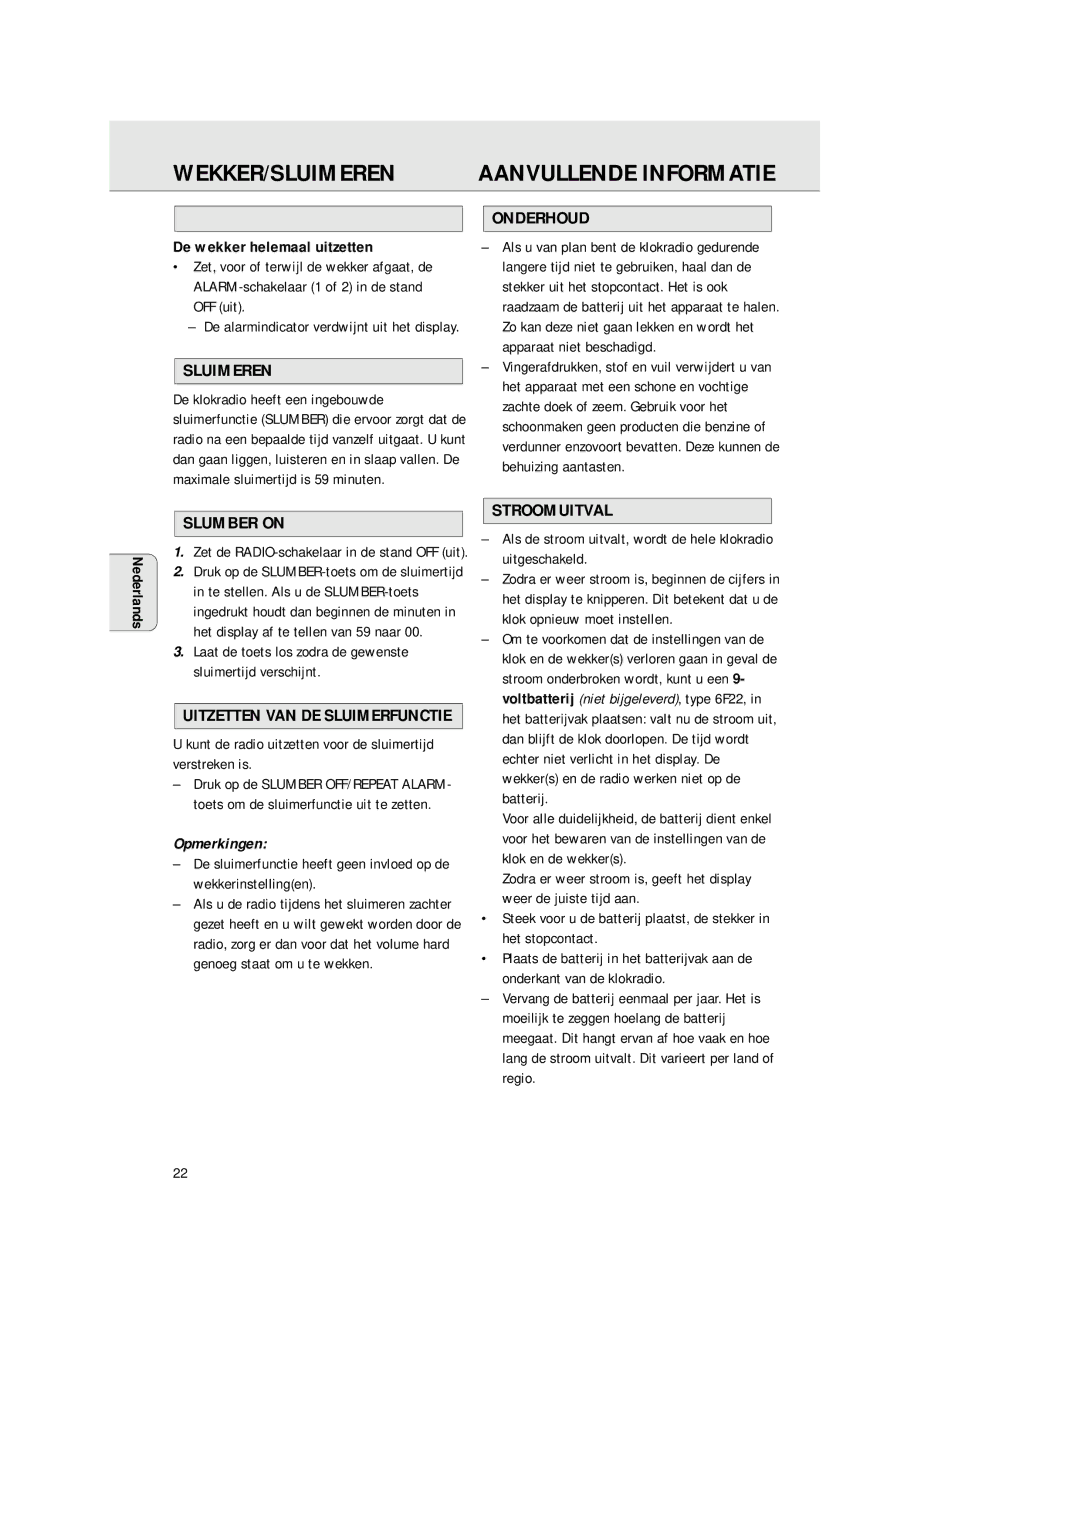 Philips AJ 3380 manual Wekker/Sluimeren, Aanvullende Informatie, Onderhoud, Stroomuitval 